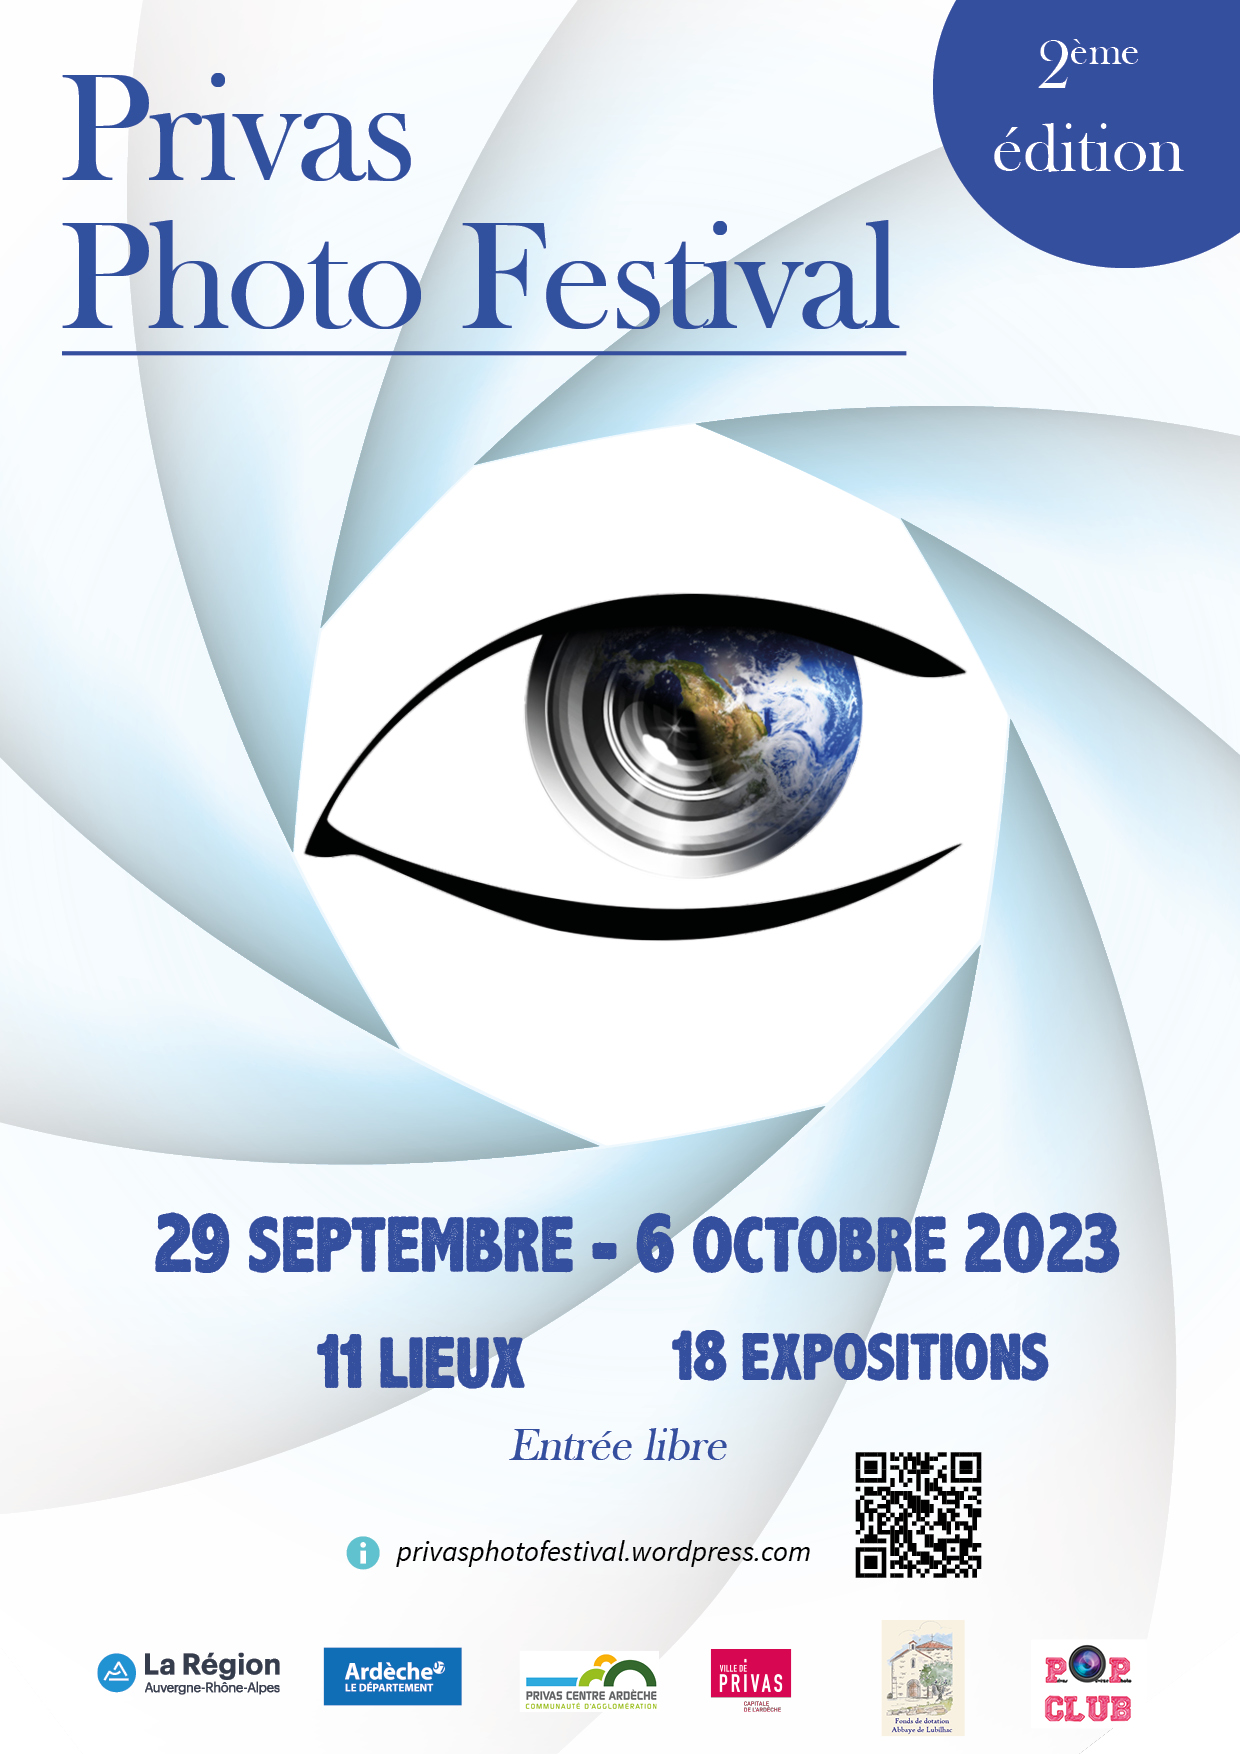 Accueil : Privas Photo Festival